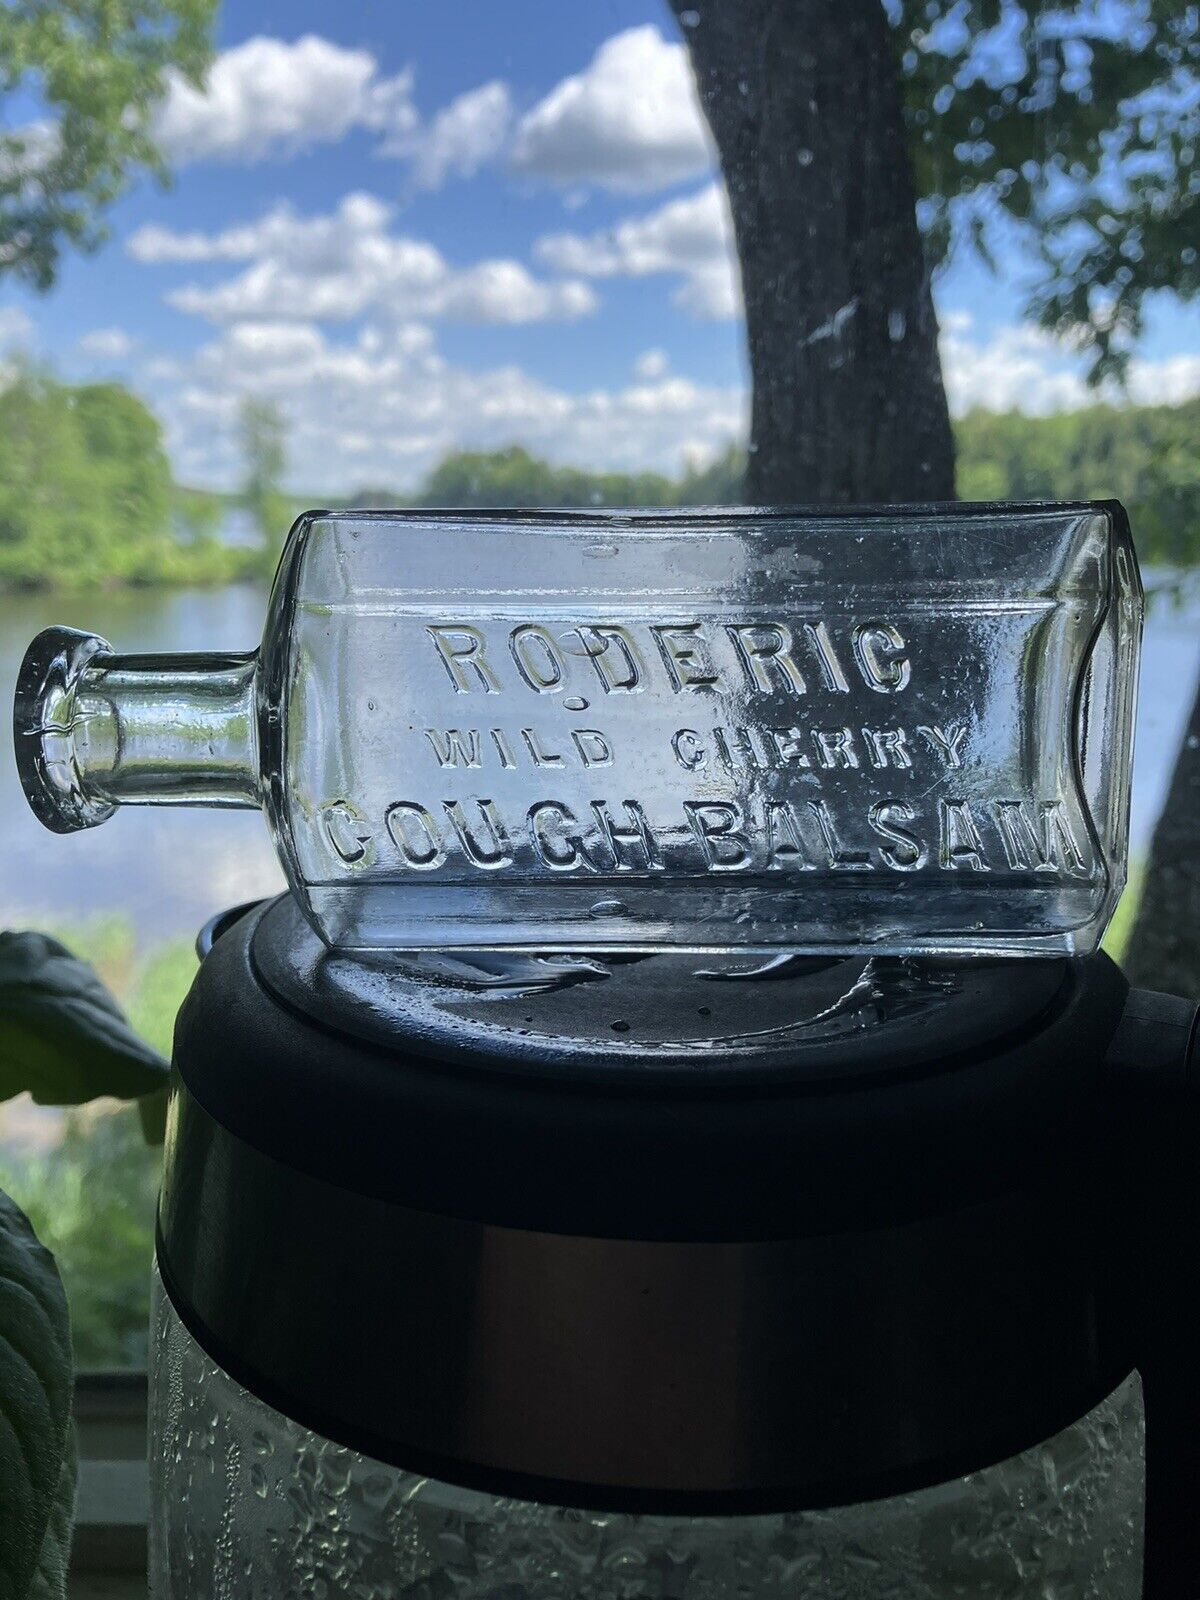 Roderic Wild Cherry Cough Balsam - Vintage Maine Medicine Bottle